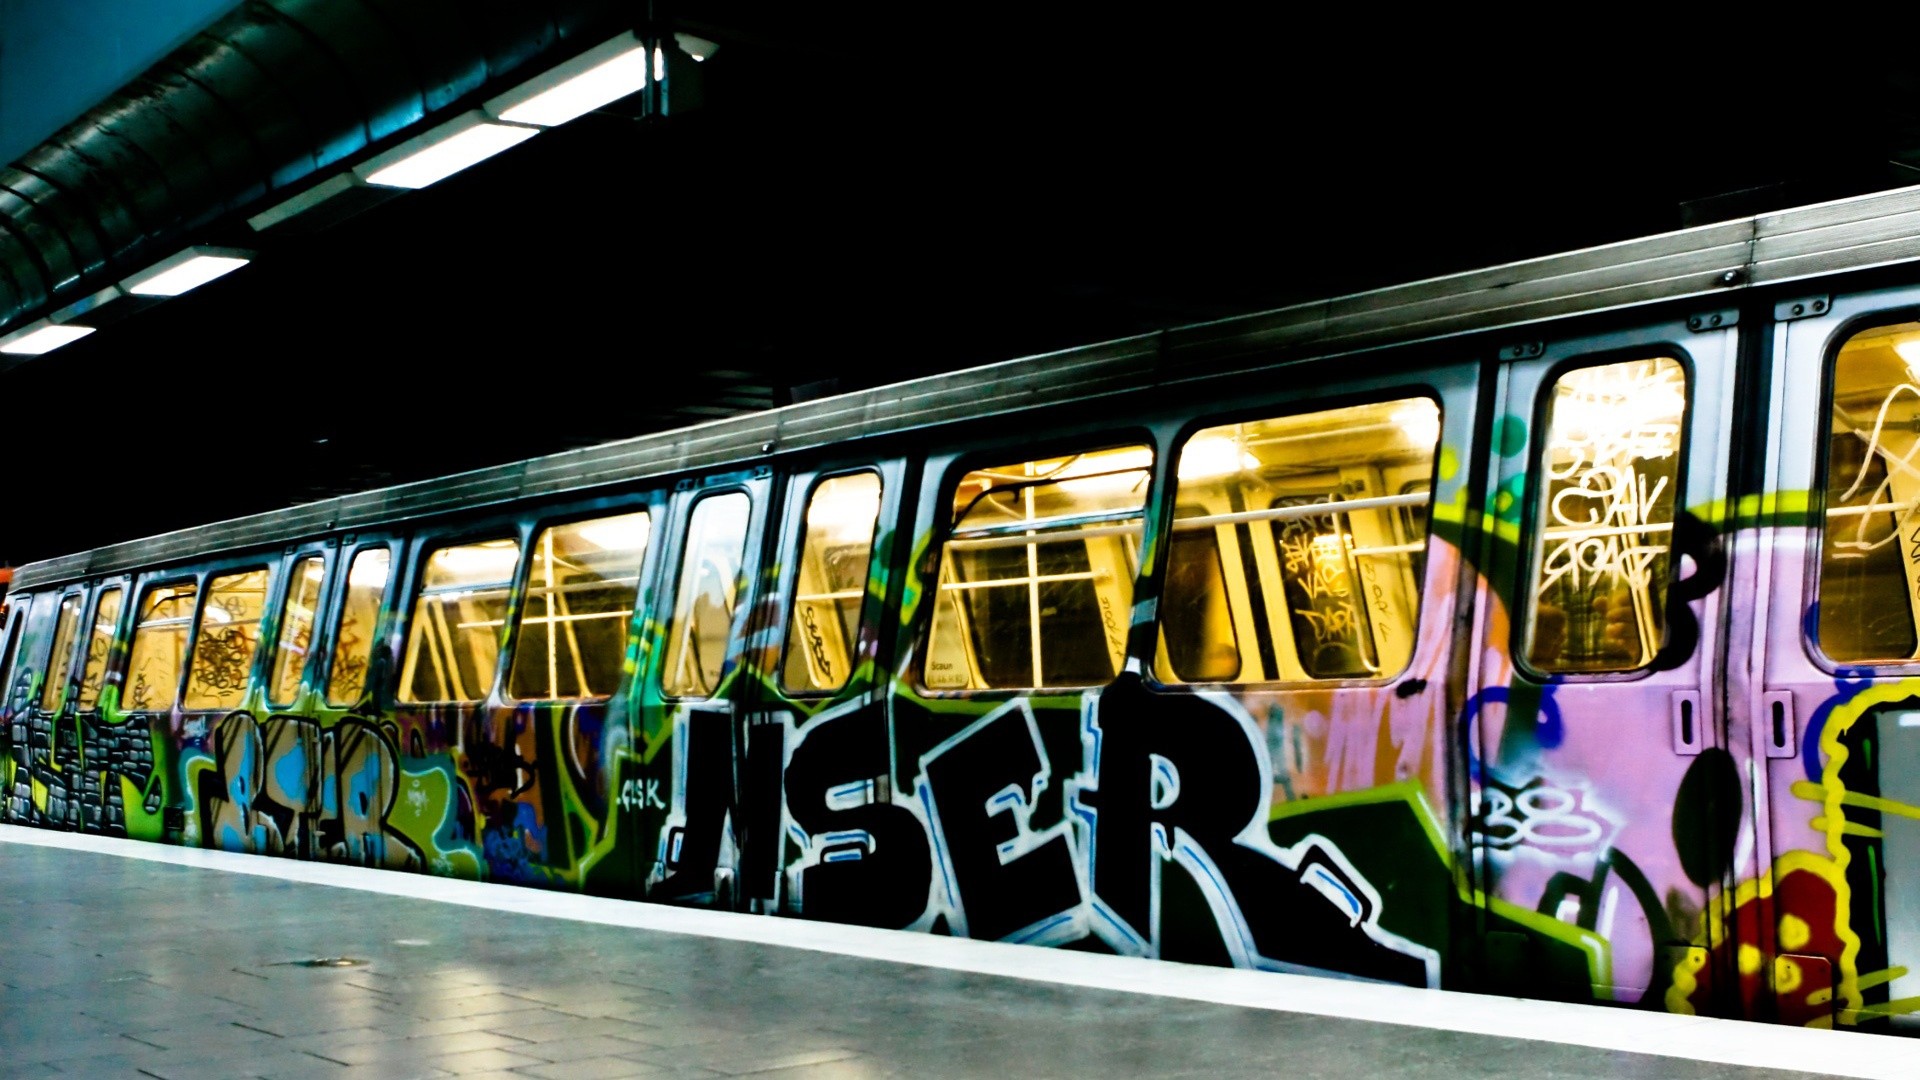 Vehicle train graffiti subway